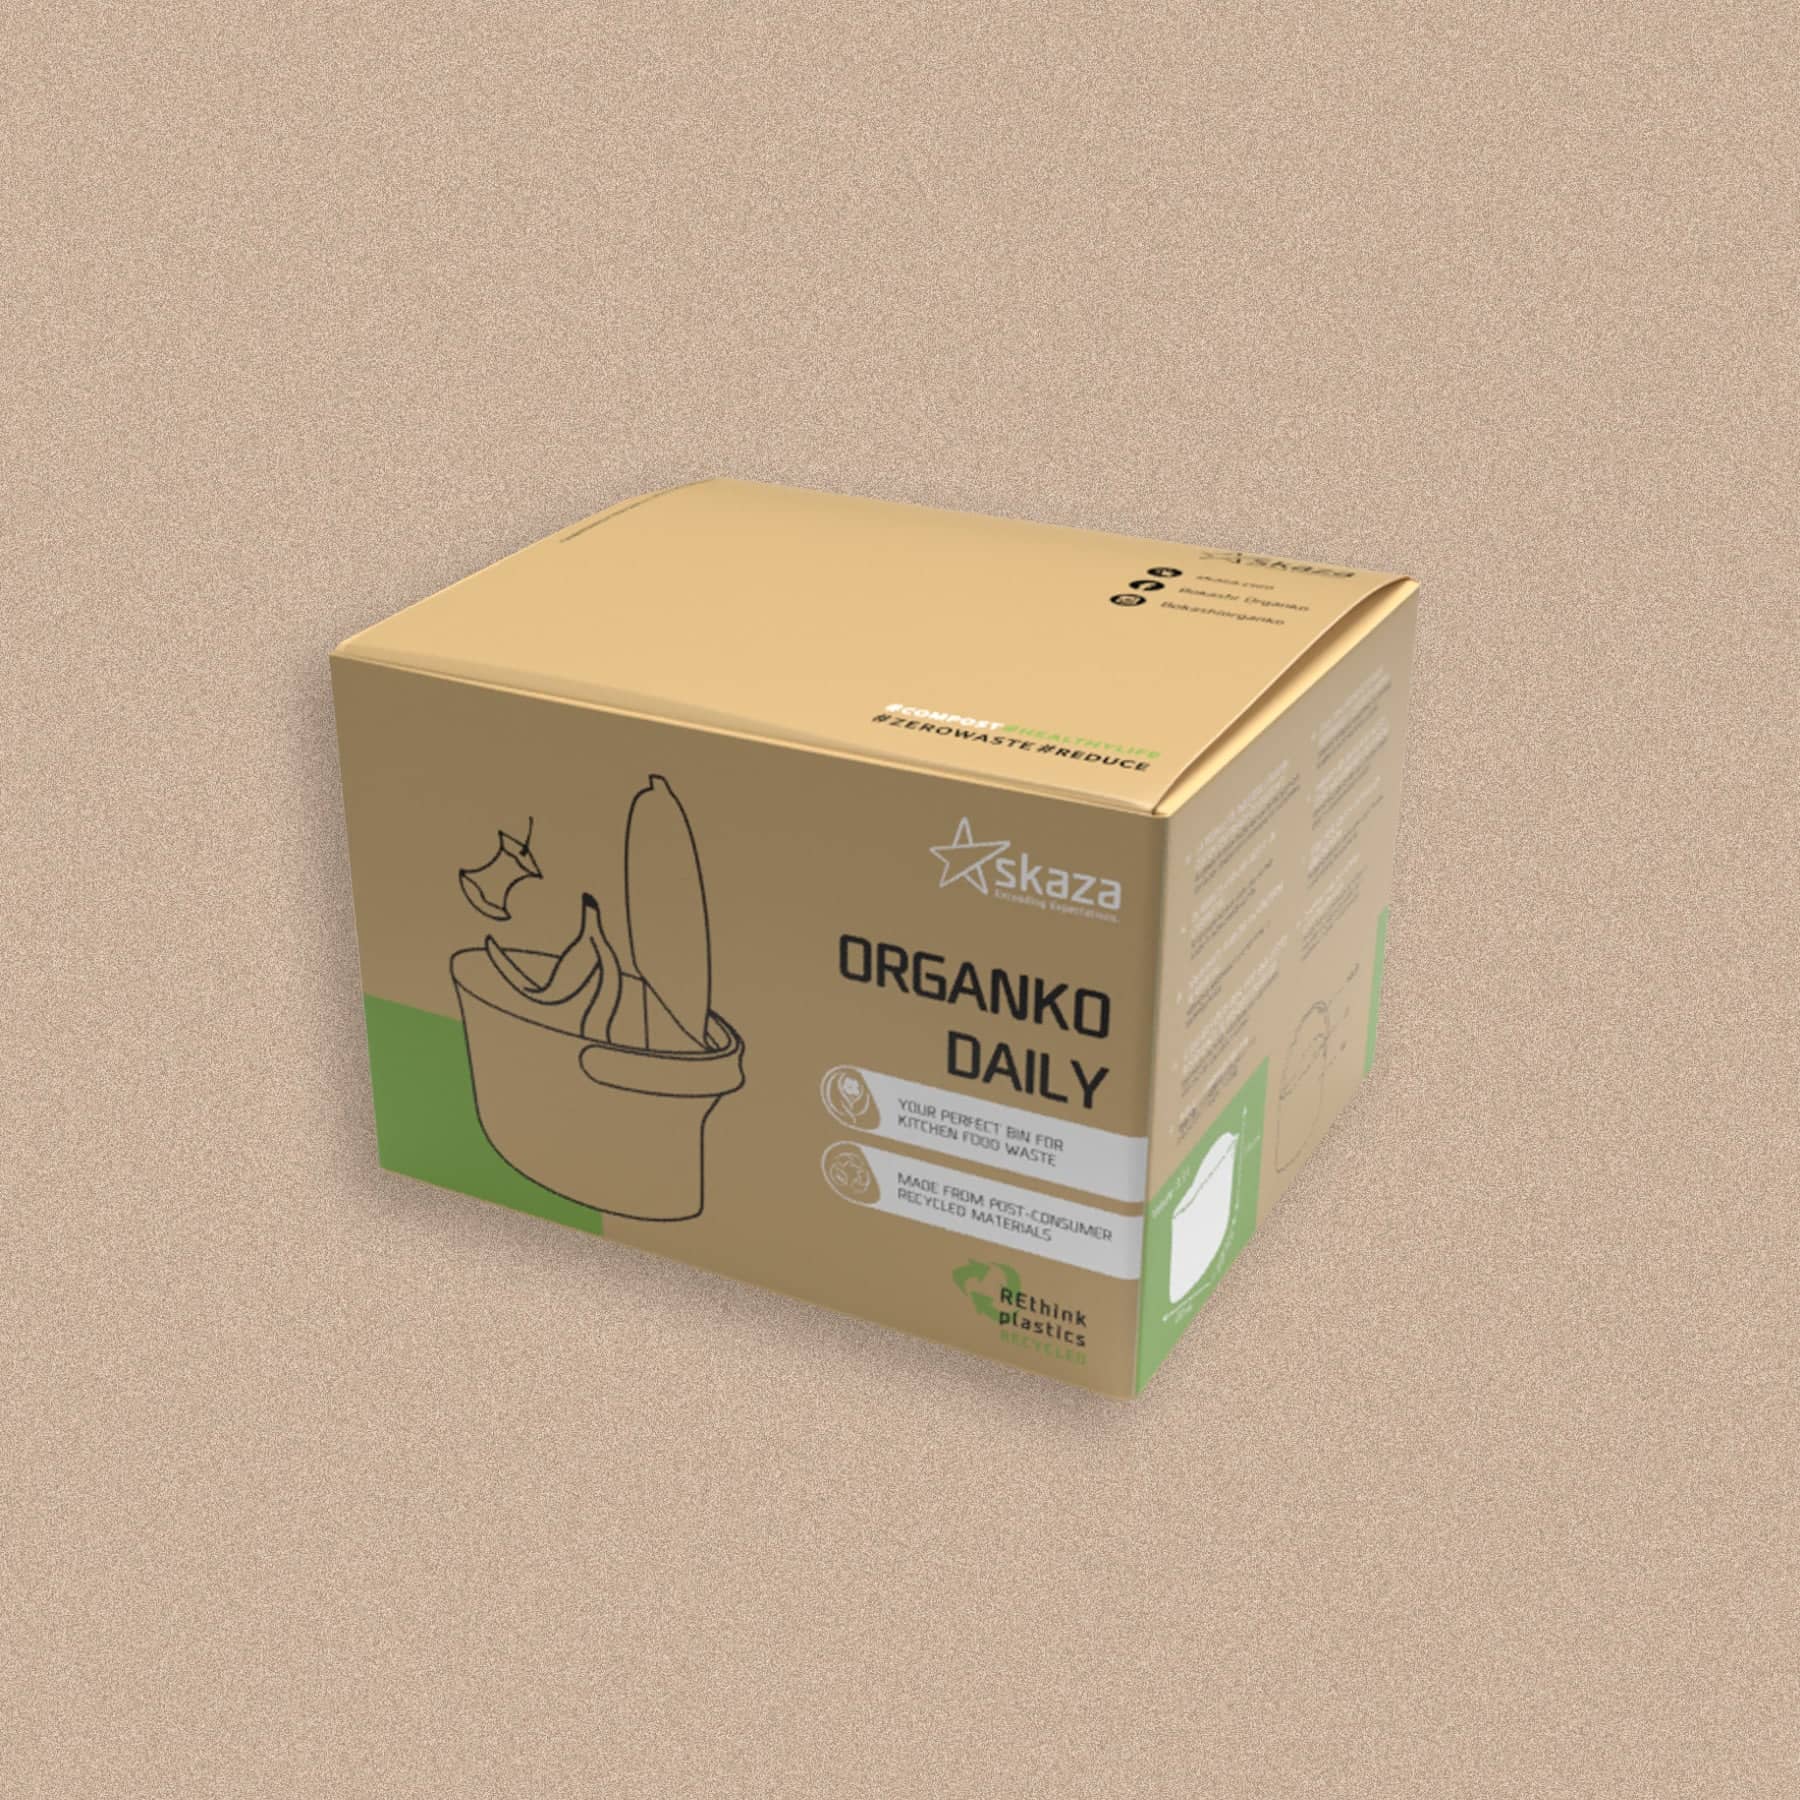 Organko Daily biojäätmete prügikast hall pakend